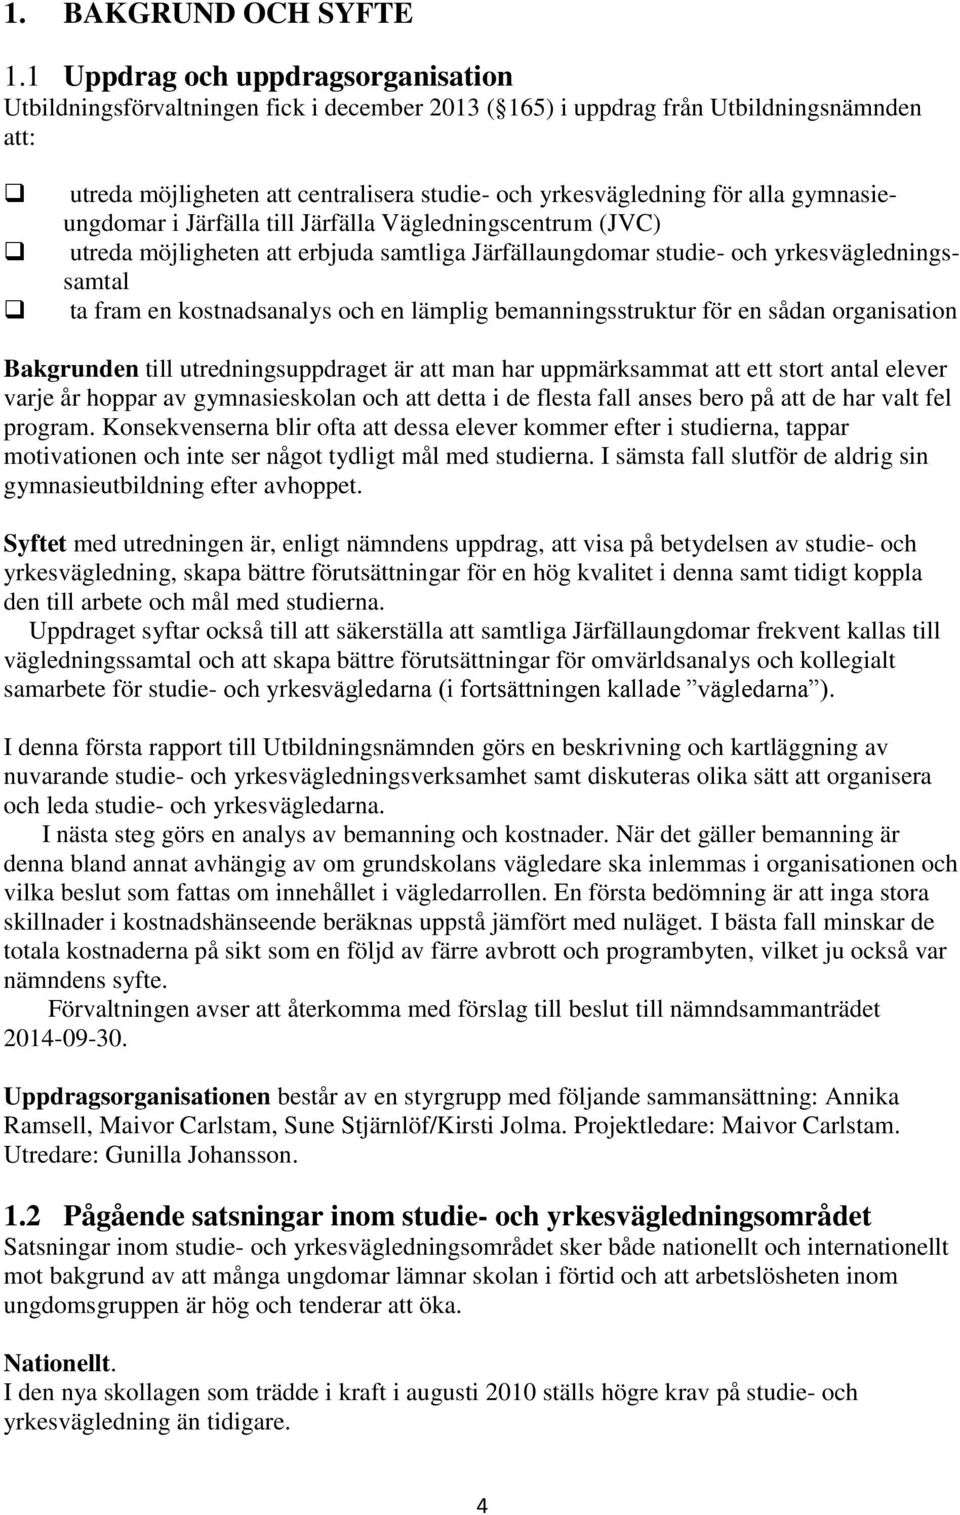 gymnasieungdomar i Järfälla till Järfälla Vägledningscentrum (JVC) utreda möjligheten att erbjuda samtliga Järfällaungdomar studie- och yrkesväglednings- samtal ta fram en kostnadsanalys och en